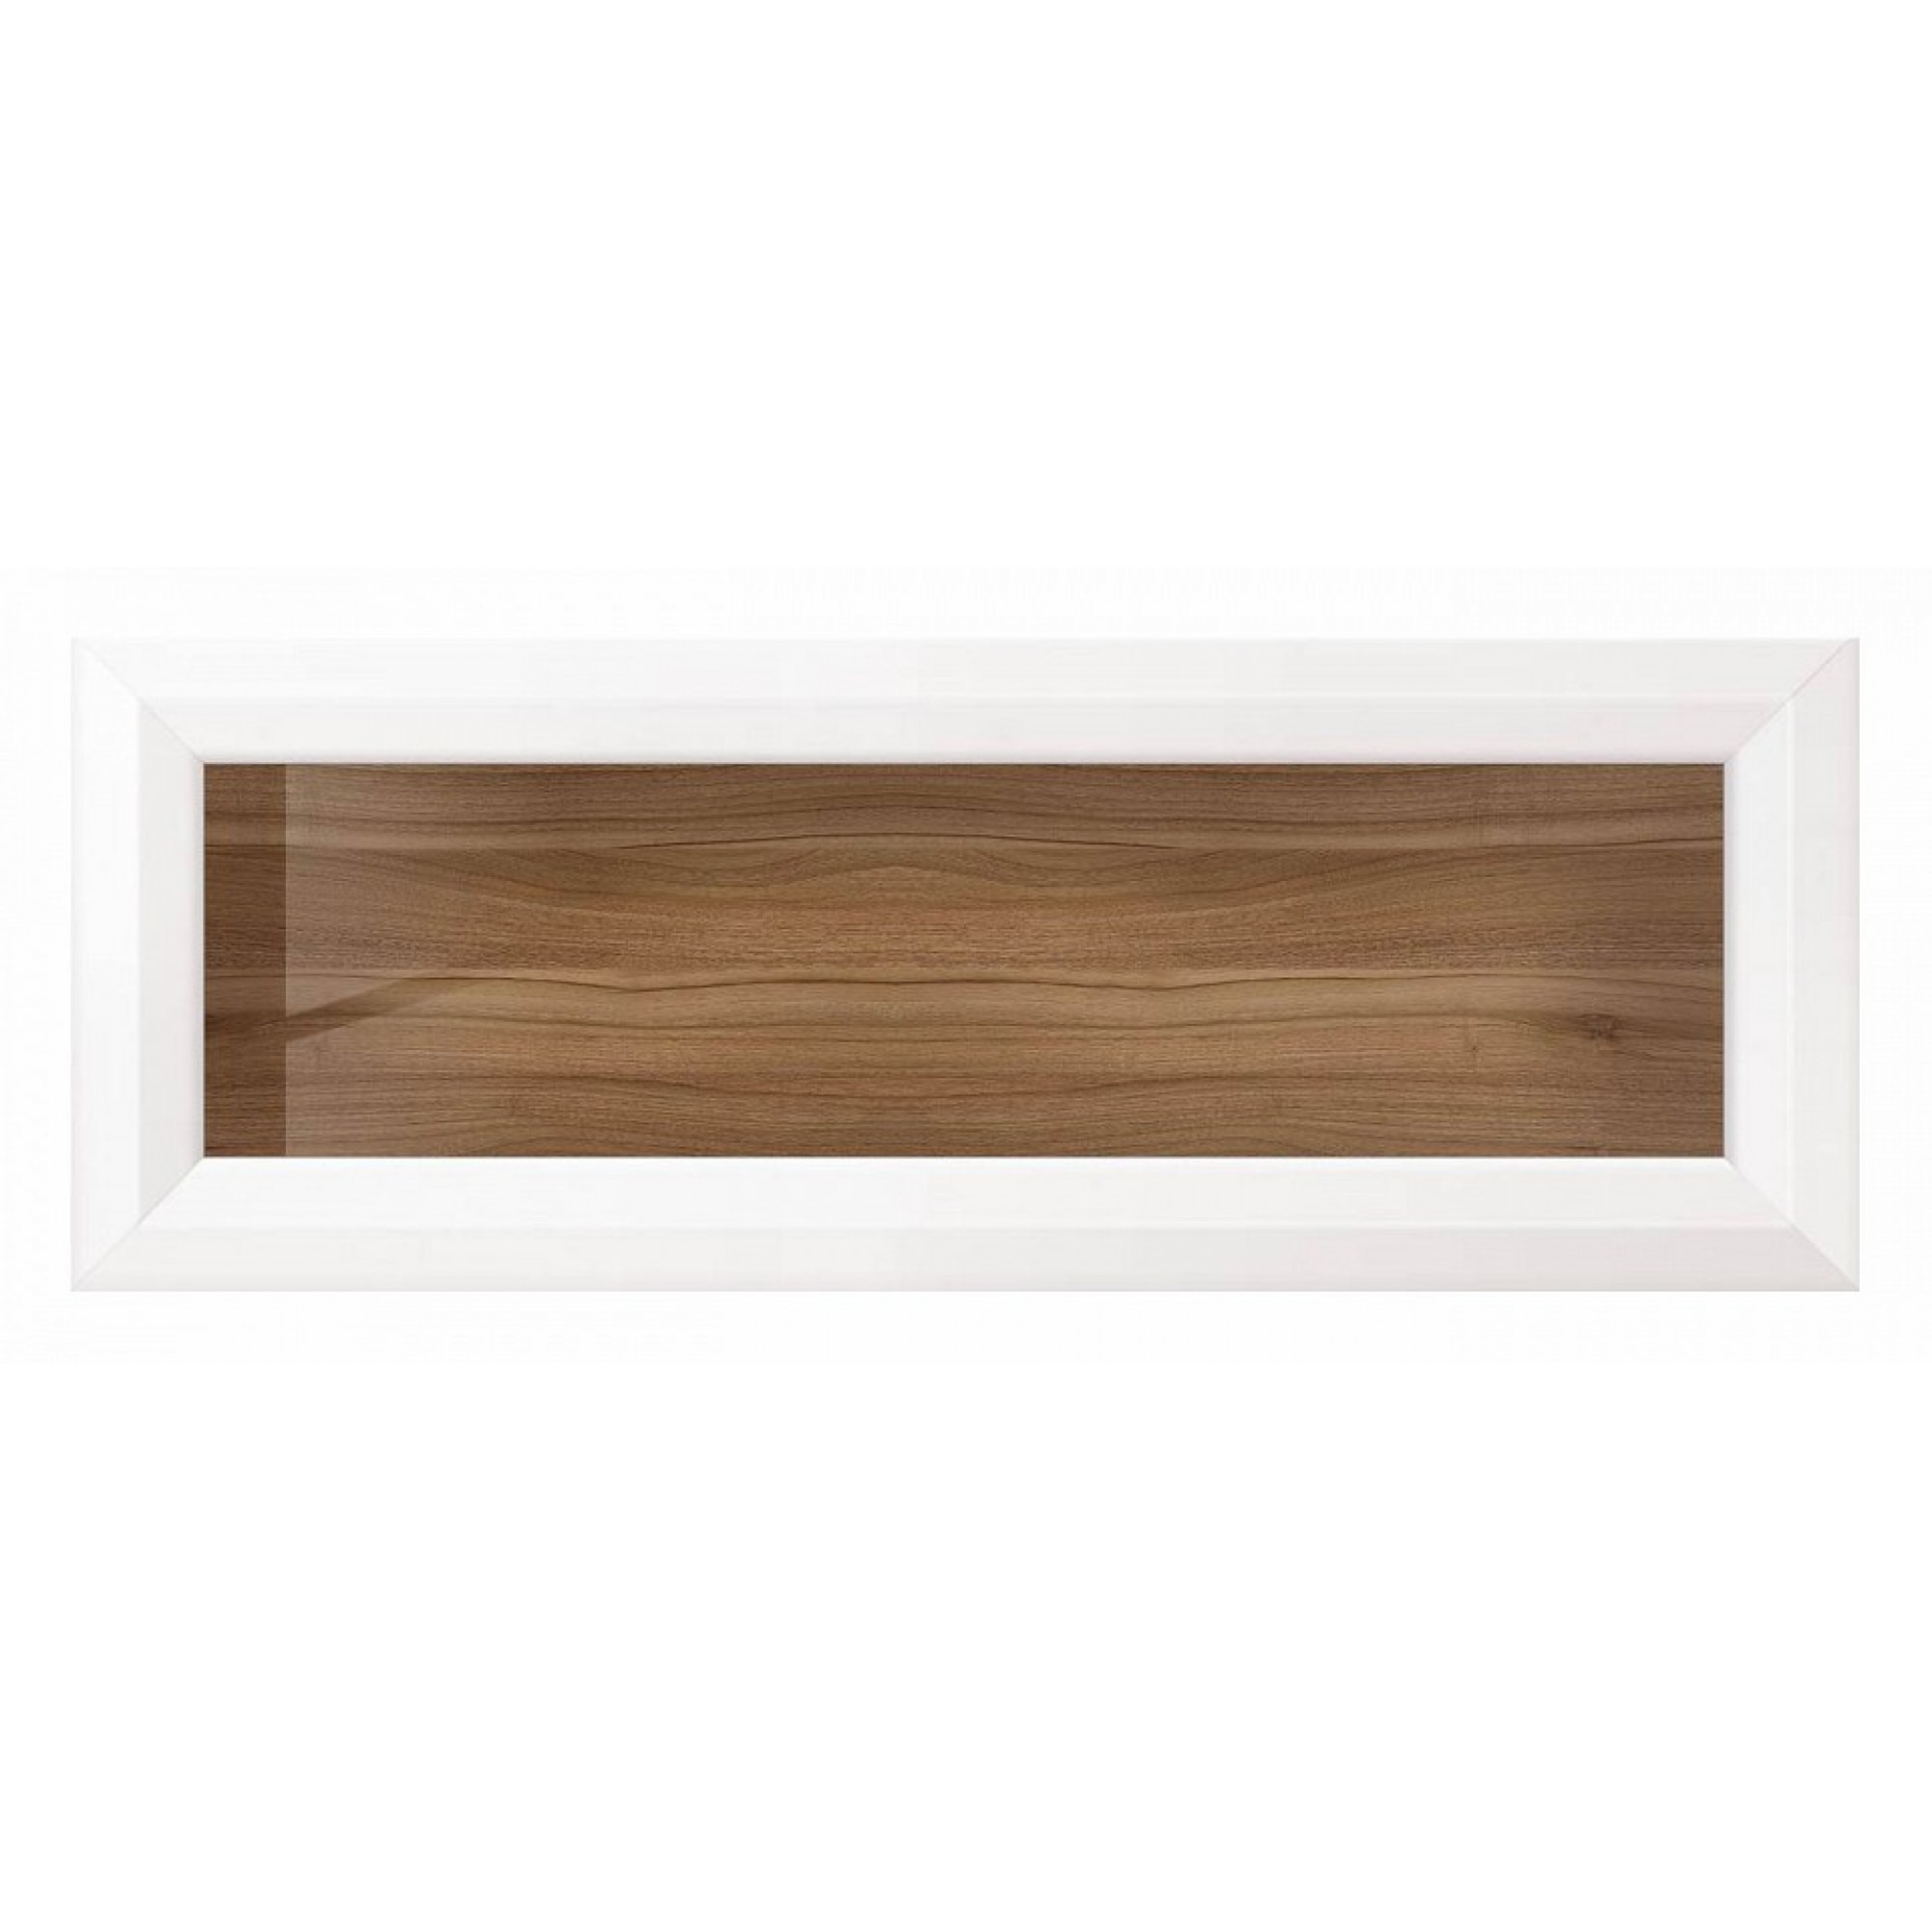 Полка книжная Мальта B136-SFW1W/11 древесина коричневая светлая лиственница 1065x300x400(BRW_70002612)